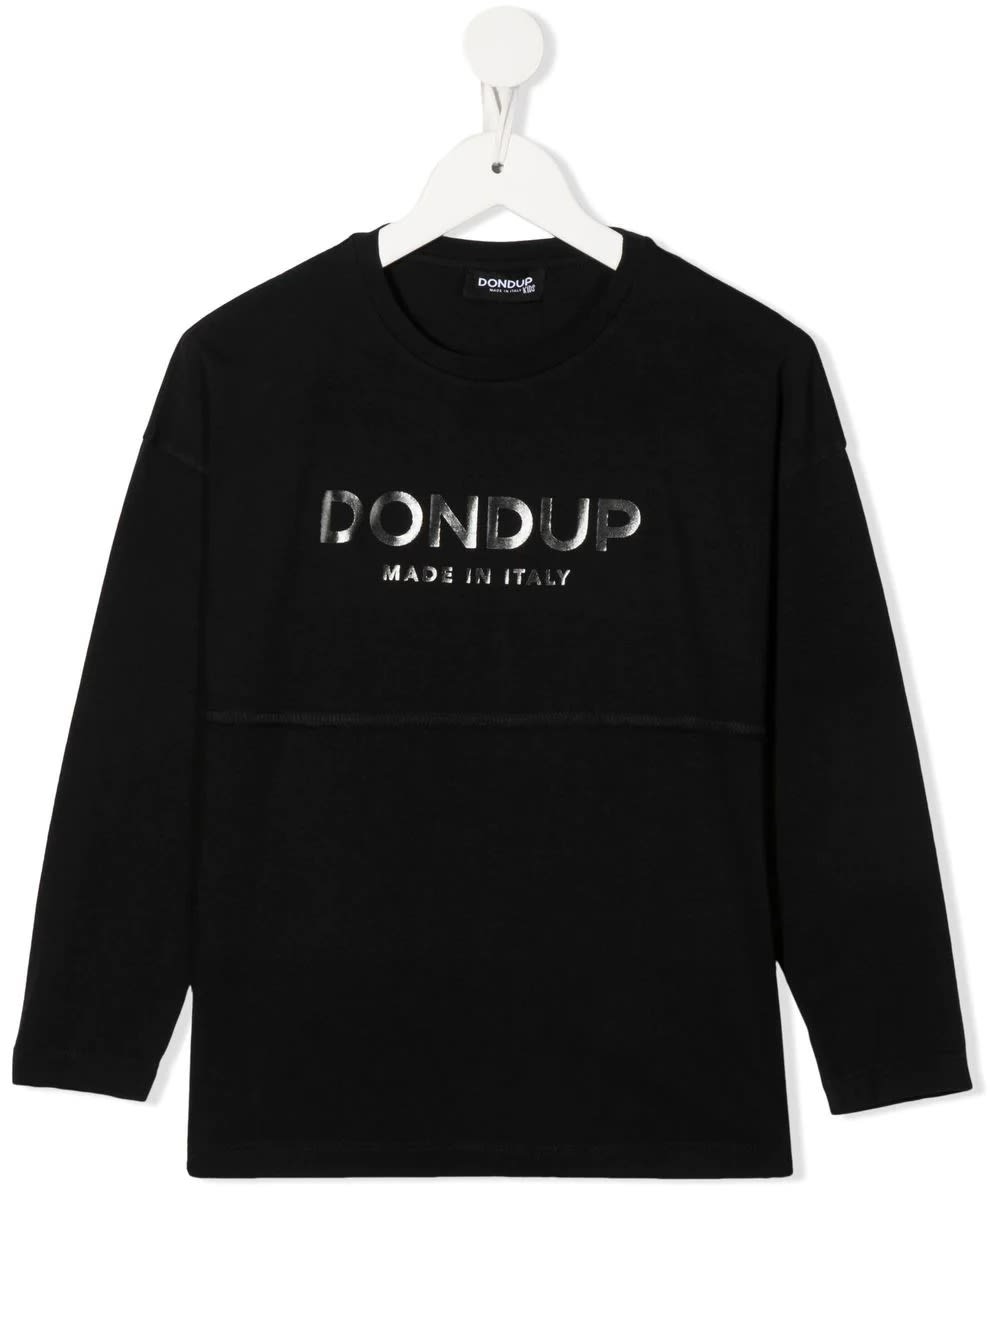 Dondup Kids Black T-shirt With Metallic Logo